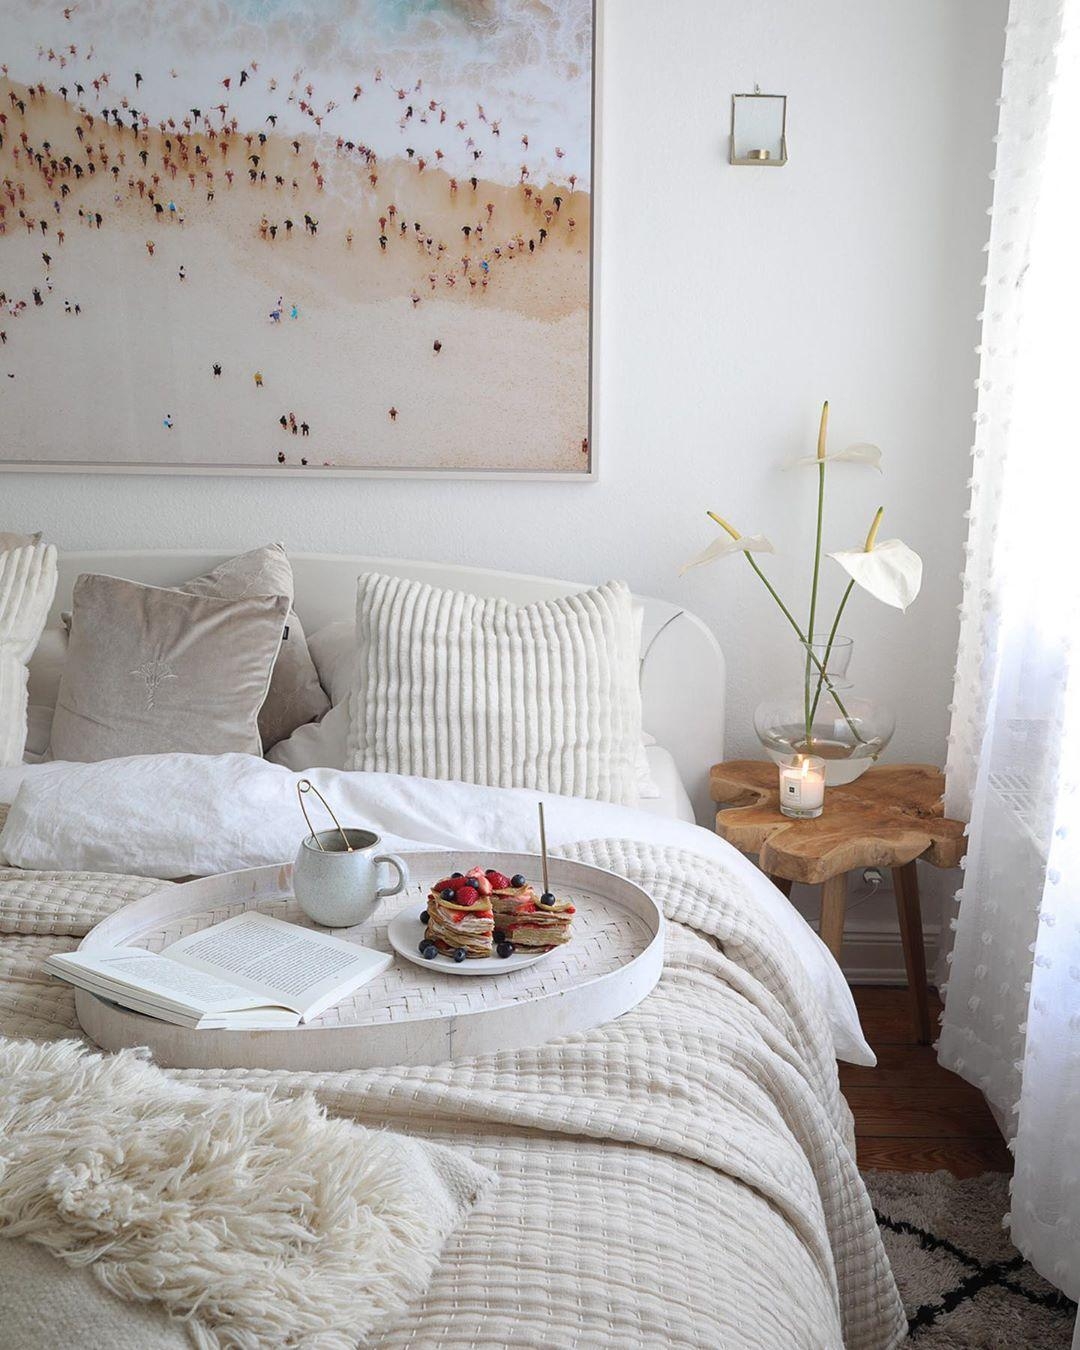 #Bed & #Breakfast 🍓

#frühstück #bett #beistelltisch #kissen #decke #blumen #gemütlich #schlafzimmer #couchliebt #cozy